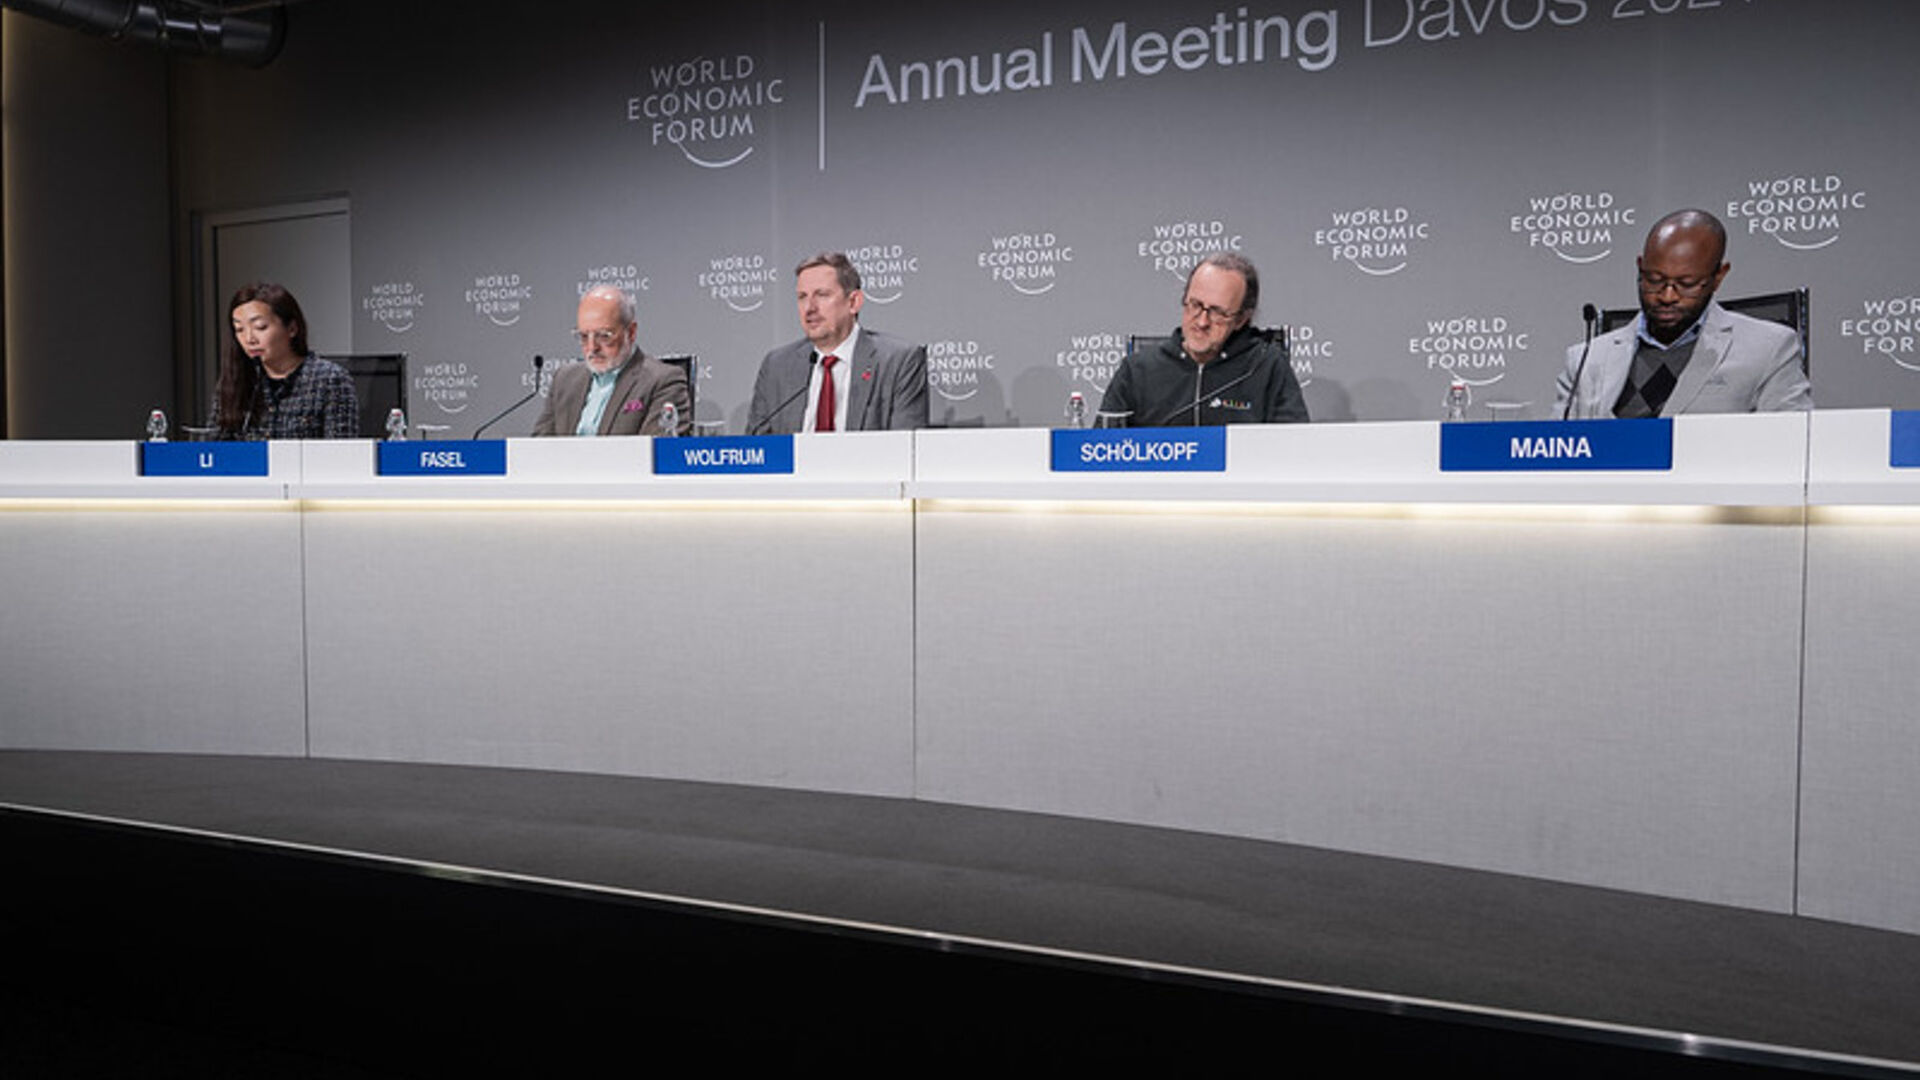 Uluslararası Hesaplama ve Yapay Zeka Ağı: Davos'taki (Grisons Kantonu) Dünya Ekonomik Forumu'nun 2024 baskısı sırasında ICAIN sunum basın toplantısı